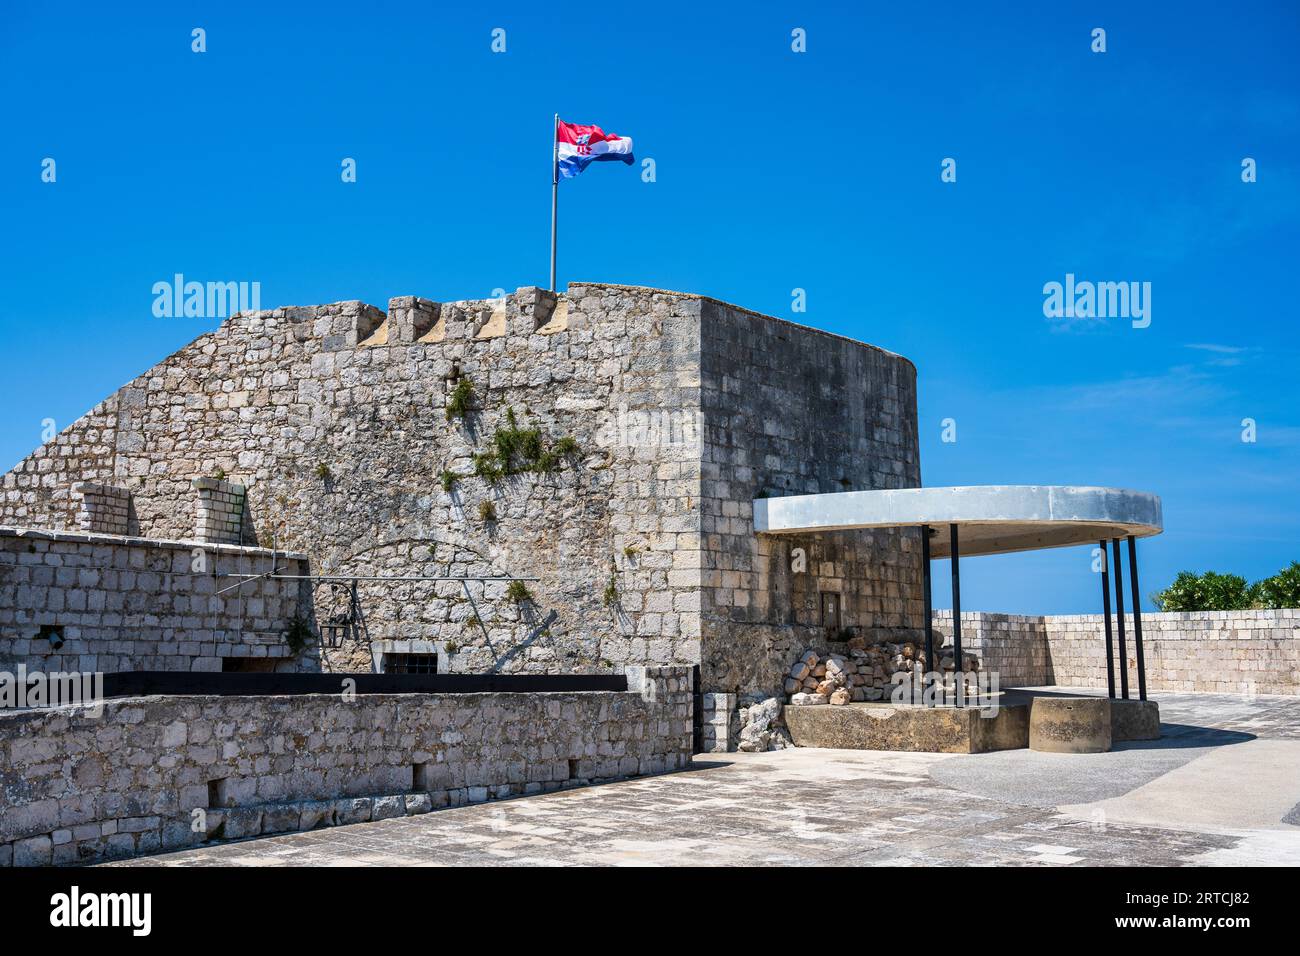 Festungsanlage der spanischen Festung, auf dem Hügel oberhalb von Hvar Town (Grad Hvar) auf der Insel Hvar an der dalmatinischen Küste Kroatiens Stockfoto